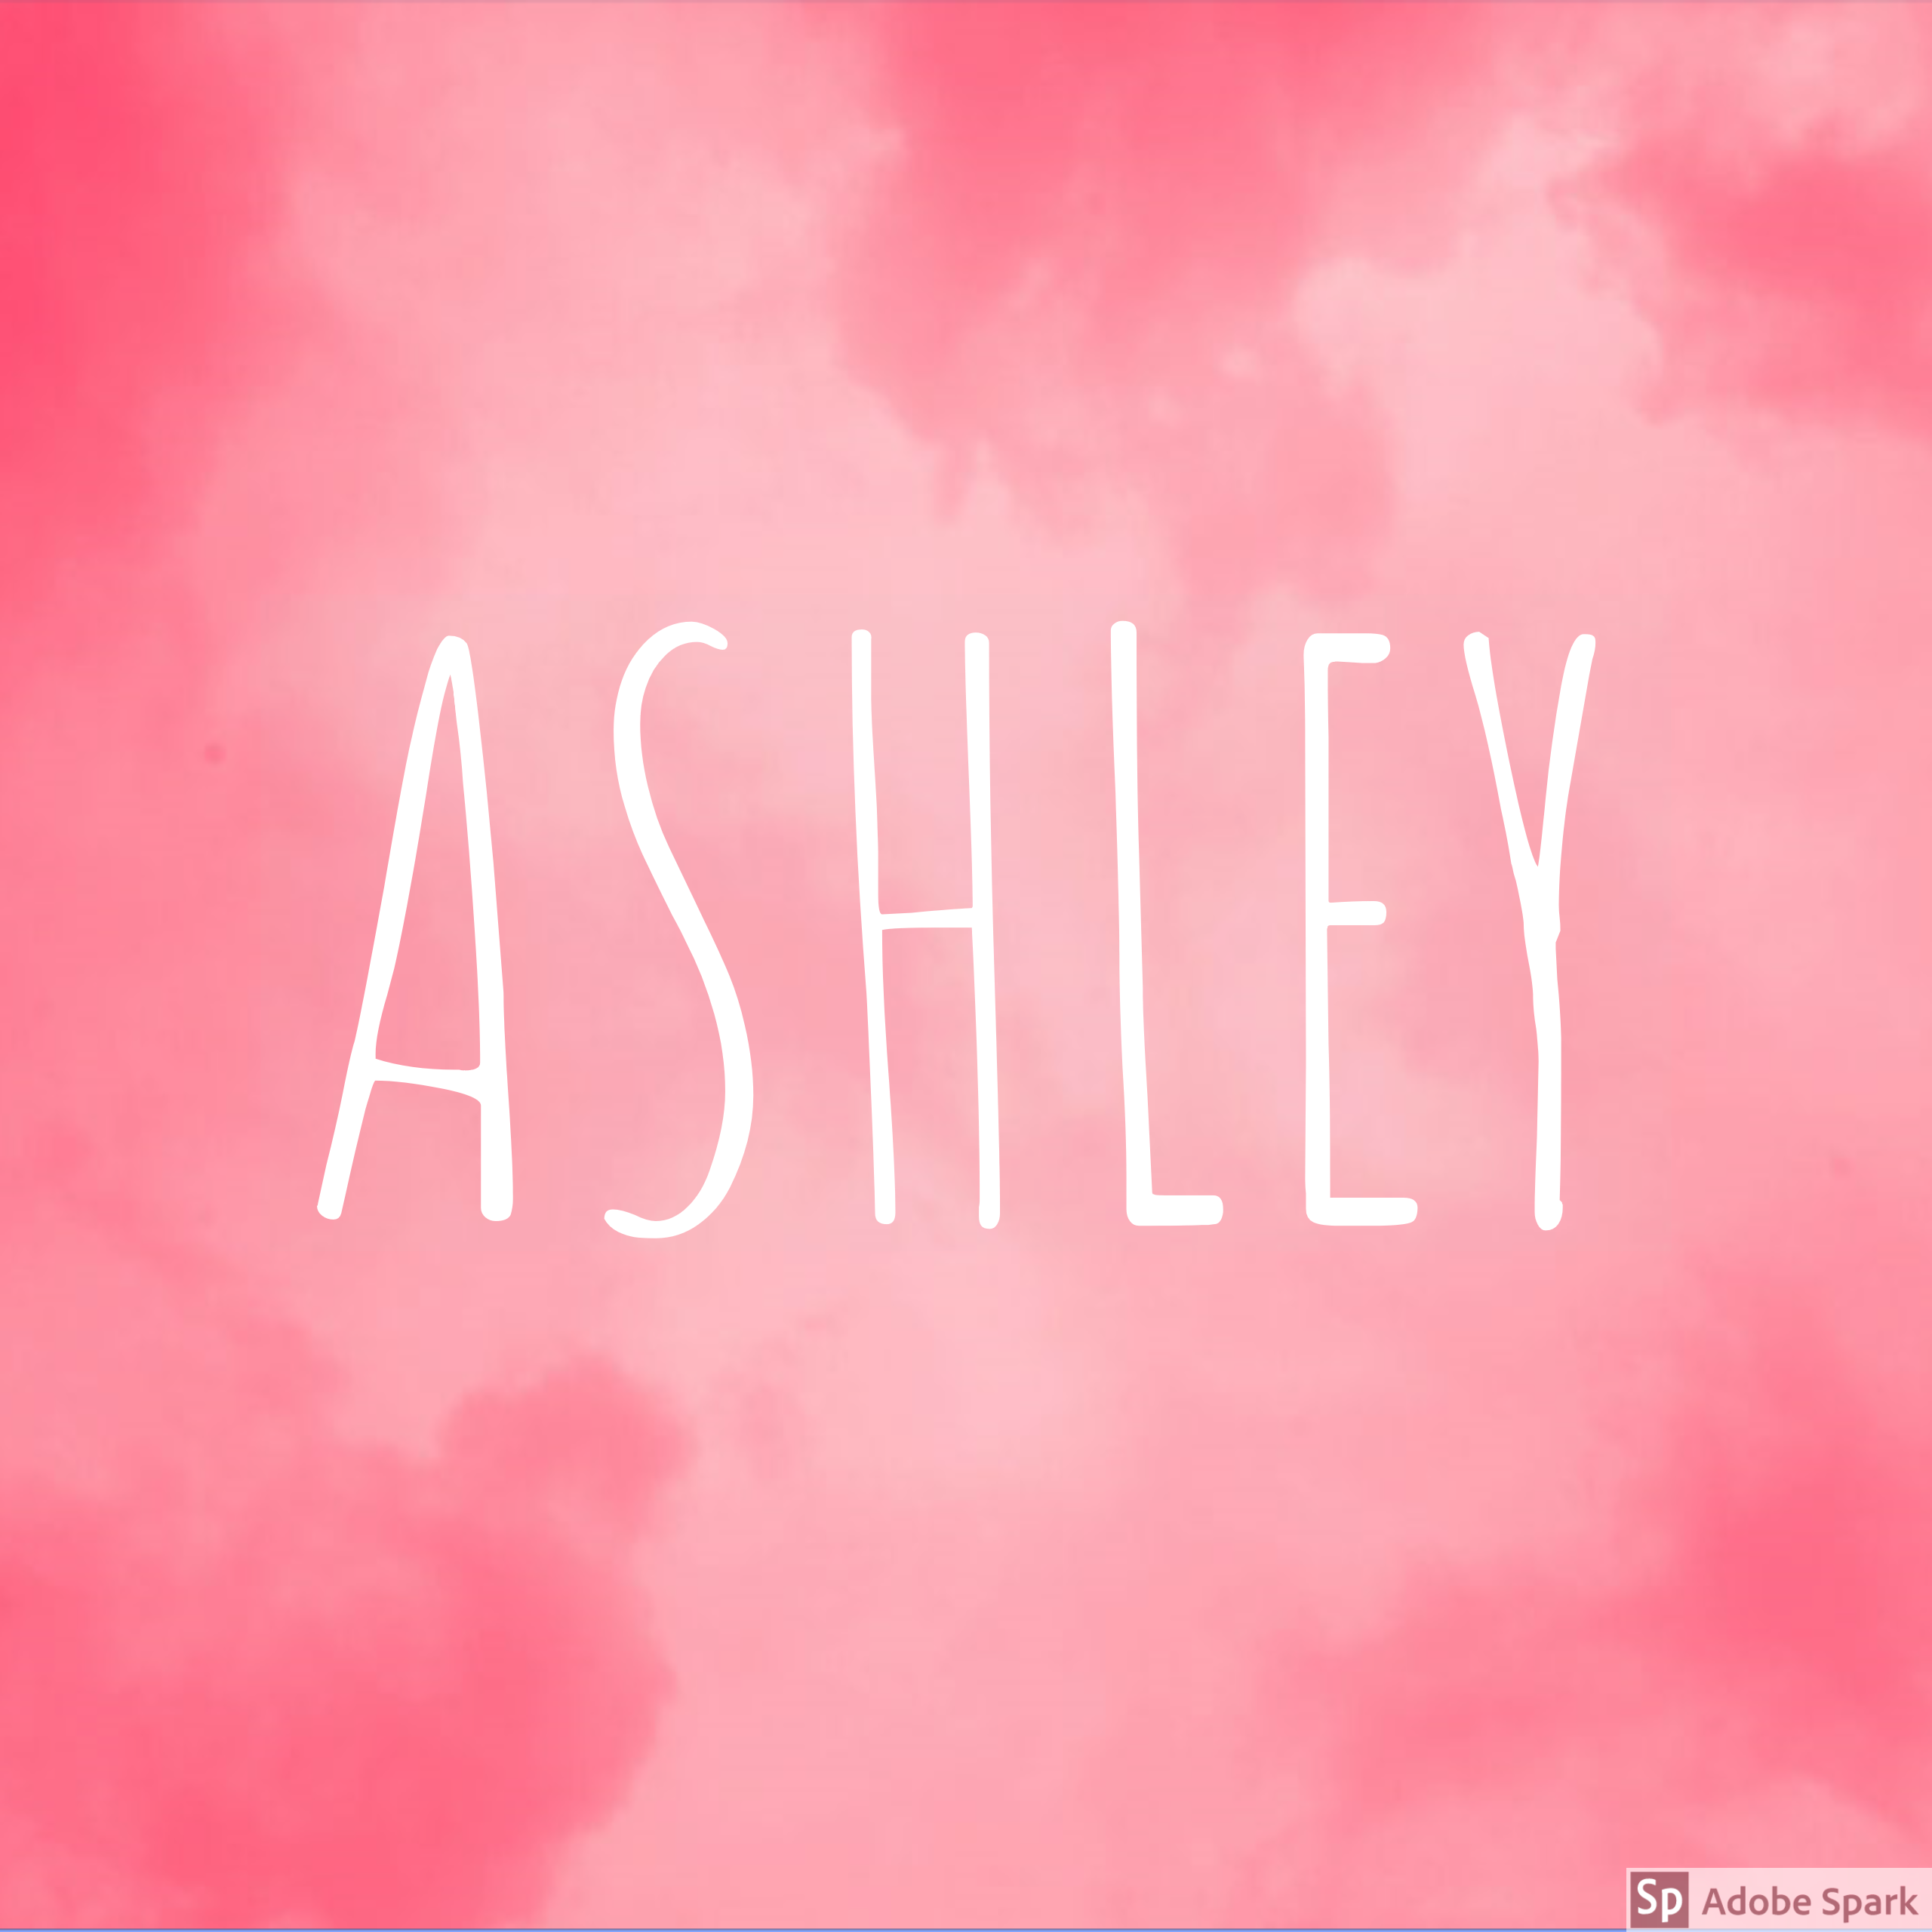 Ashley Wallpaper Name Instagram Aesthetic